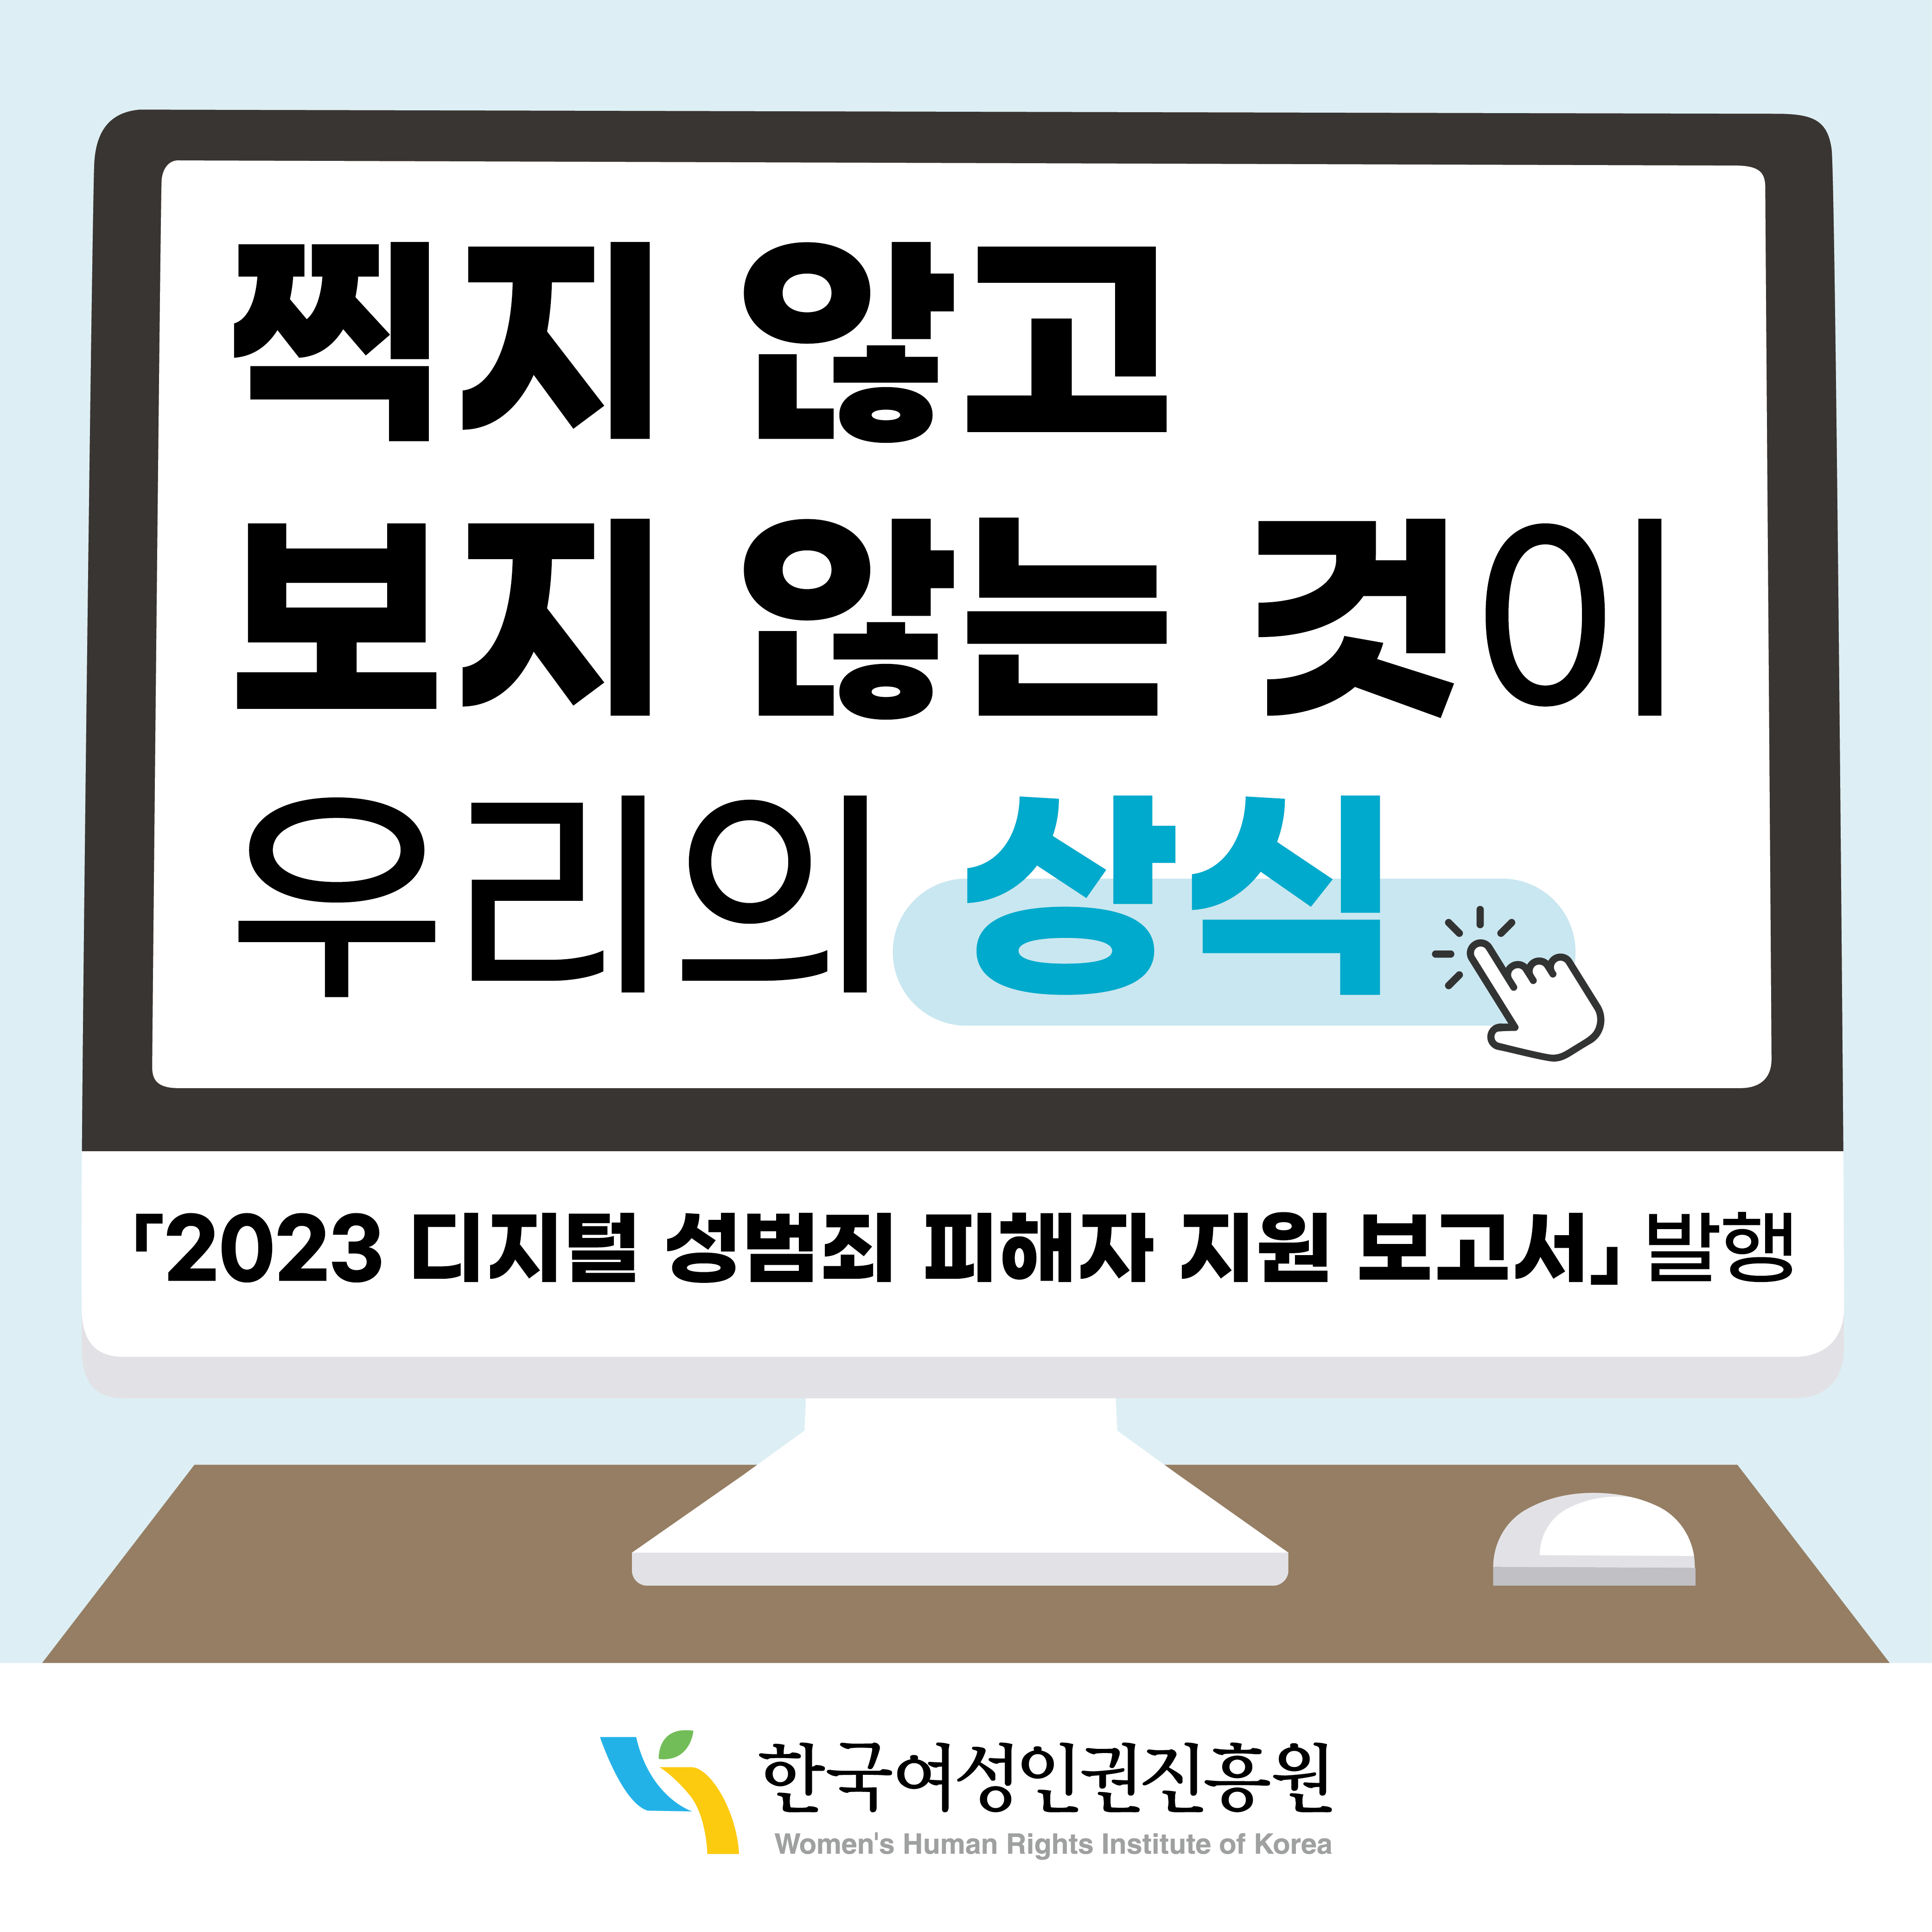 찍지 않고 보지 않는 것이 우리의 상식 2023 디지털 성범죄 피해자 지원 보고서 발행 한국여성인권진흥원 WOMEN'S HUMAN RIGHTS INSTLTUTE OF KOREA